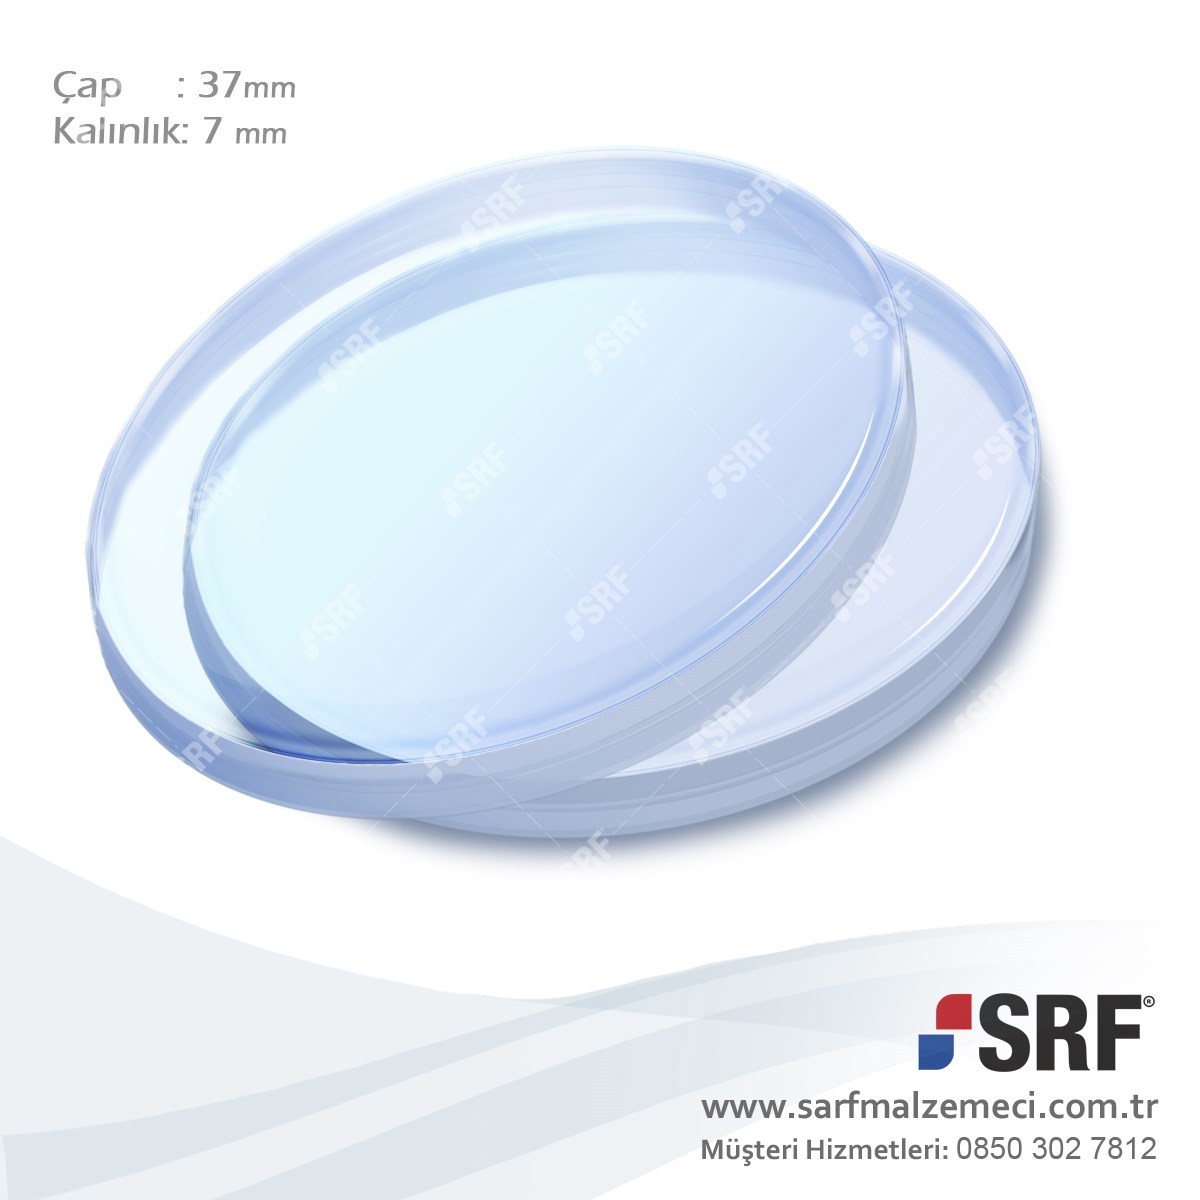 Lazer kesim makinesi lens koruma camı. D37D7 Çap:37mm Kalınlık:7mm